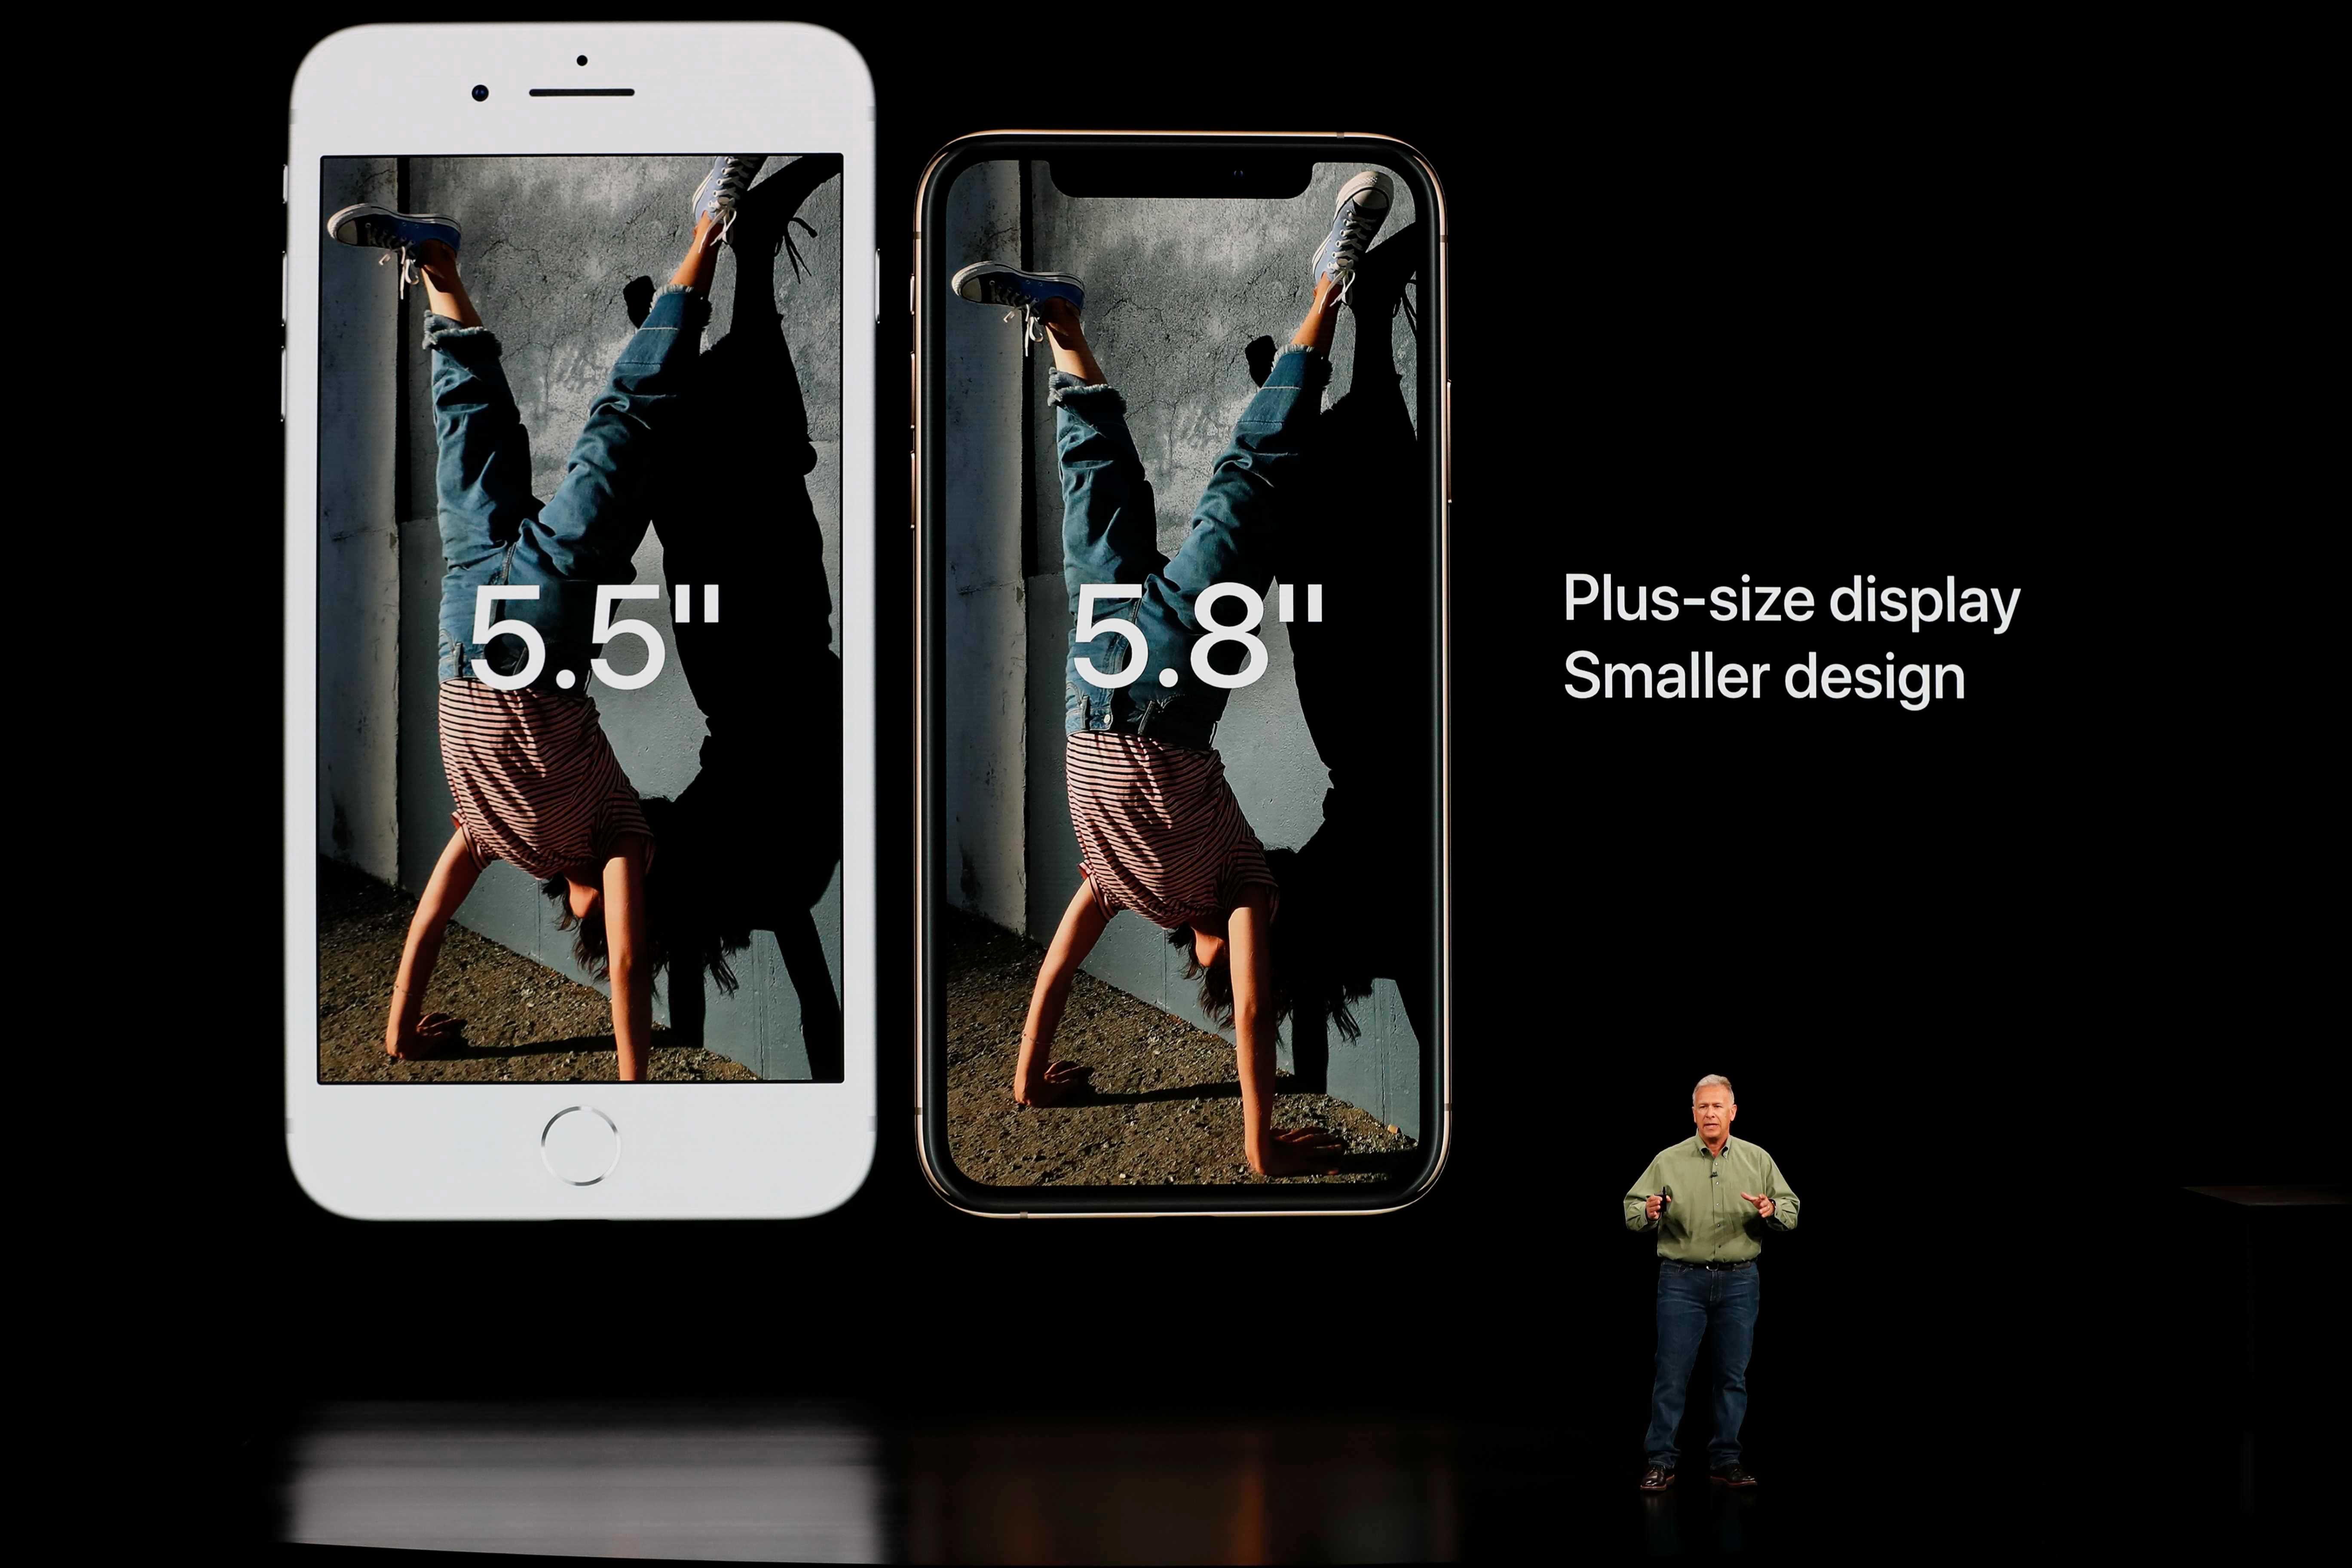   أكبر 2019 iPhone يمكن أن يكون أكبر من Apple2018 نماذج ، وفقا لشائعات عن 6.7 بوصة المحمول